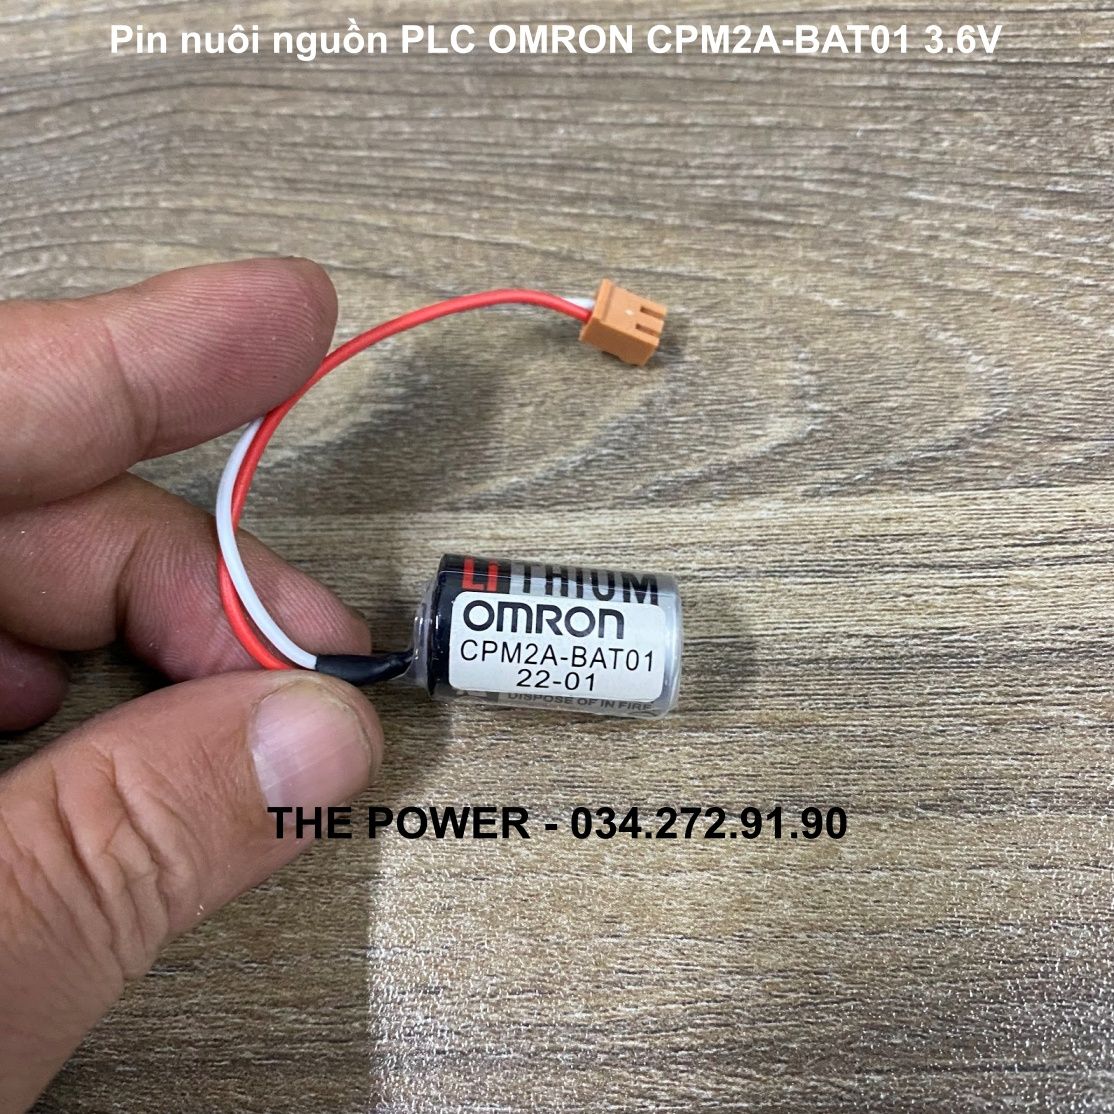 Pin nuôi nguồn PLC OMRON CPM2A-BAT01 3.6V